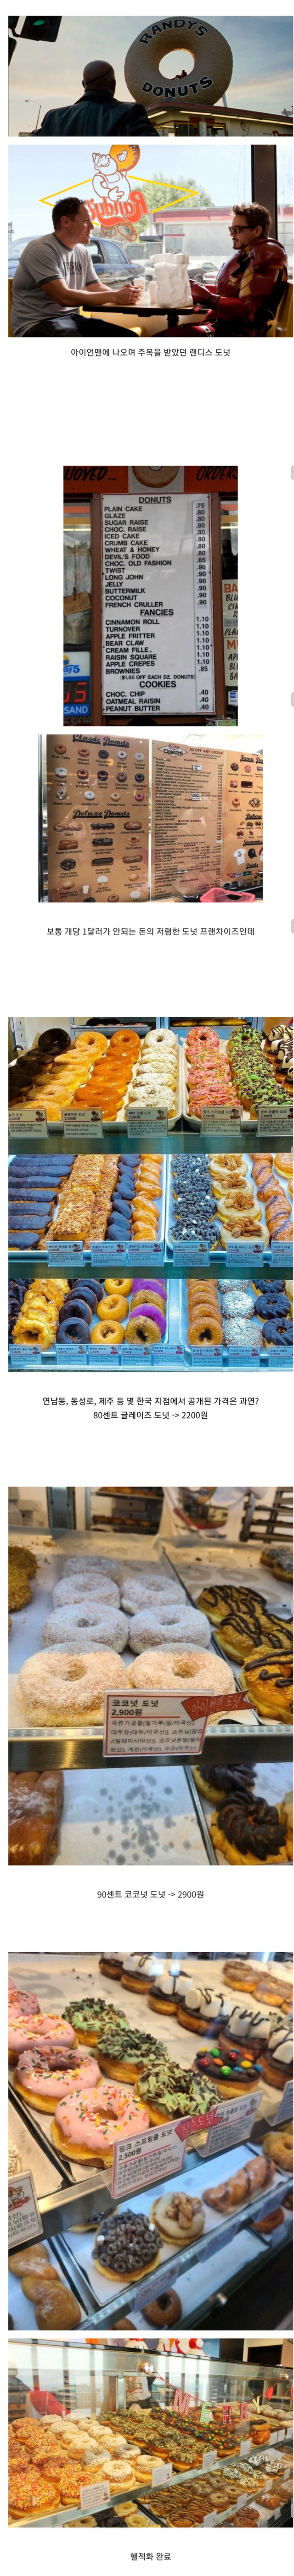 아이언맨 도넛으로 유명한 랜디스 도넛 한국에 상륙 - 꾸르